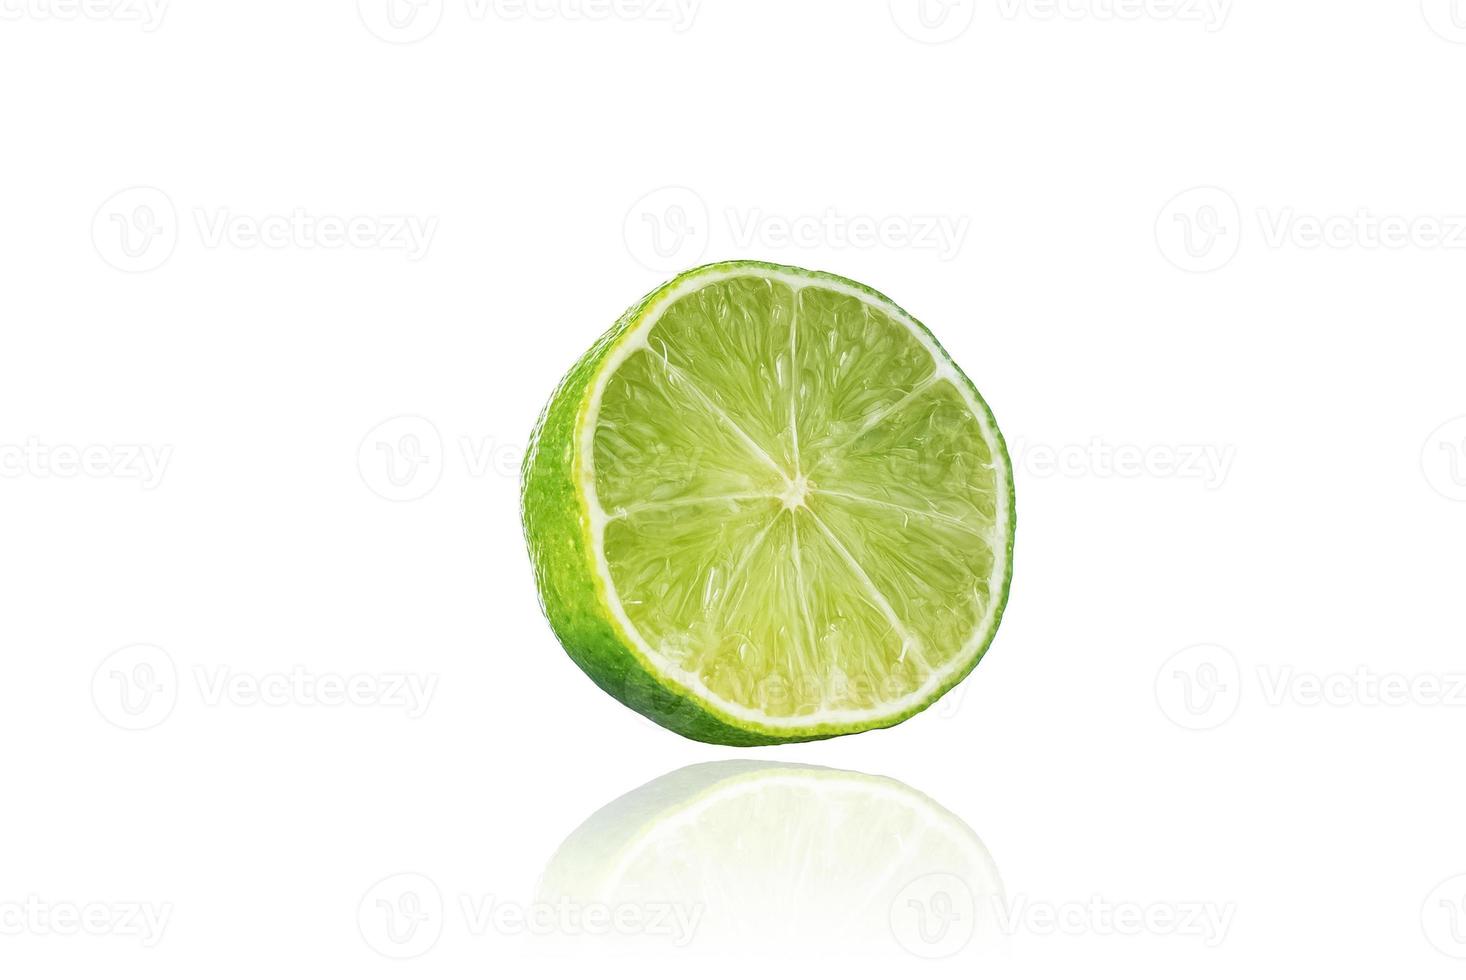 morceau de citron vert, tranche, isolé sur fond blanc avec ombre portée. photo